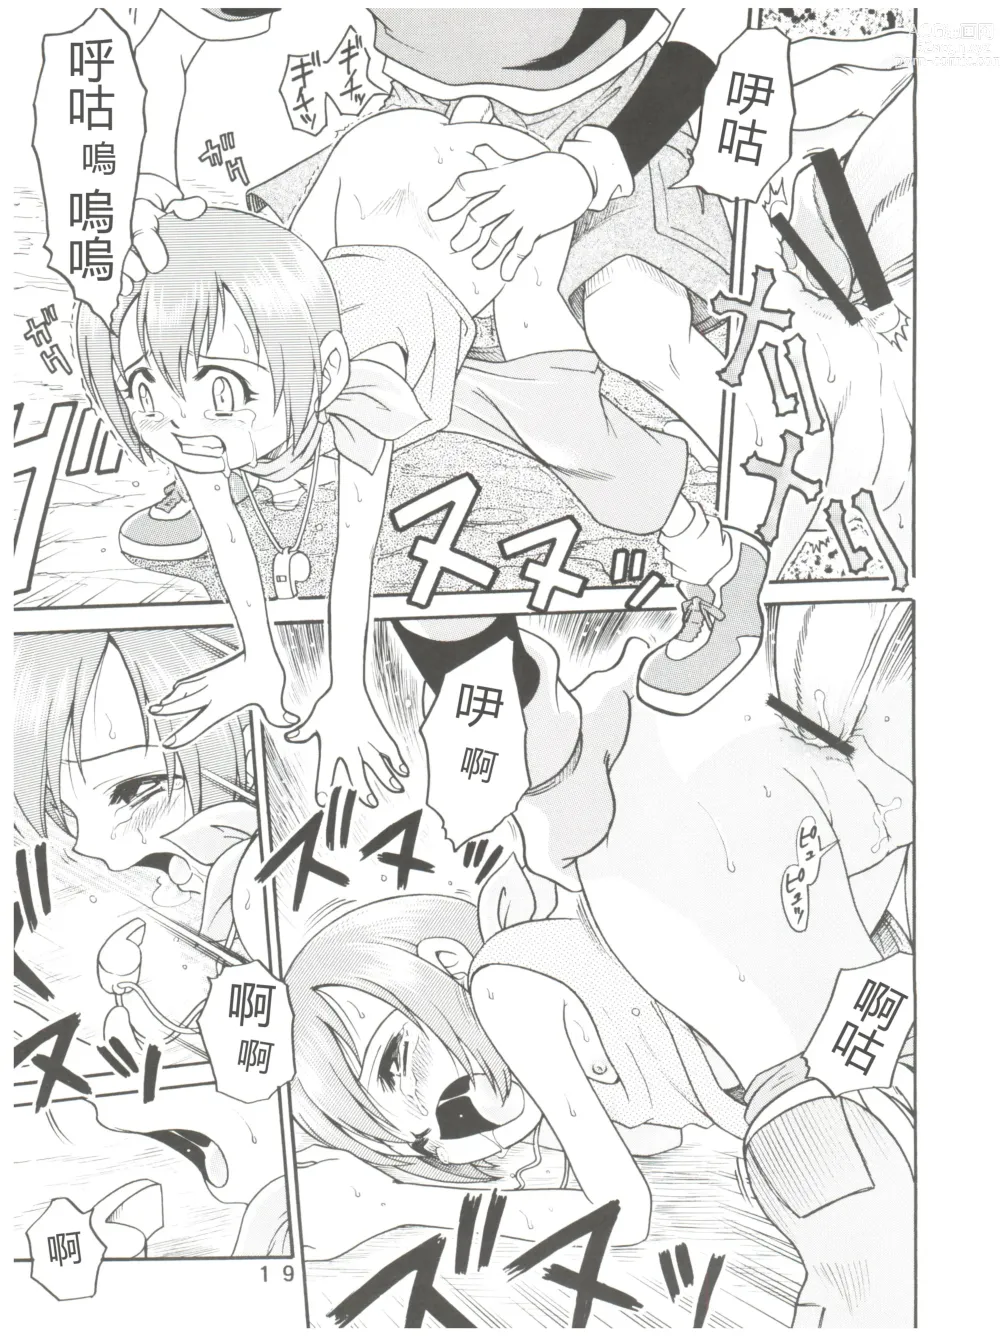 Page 19 of doujinshi Pichuu Pikachuu Daigyakusatsu